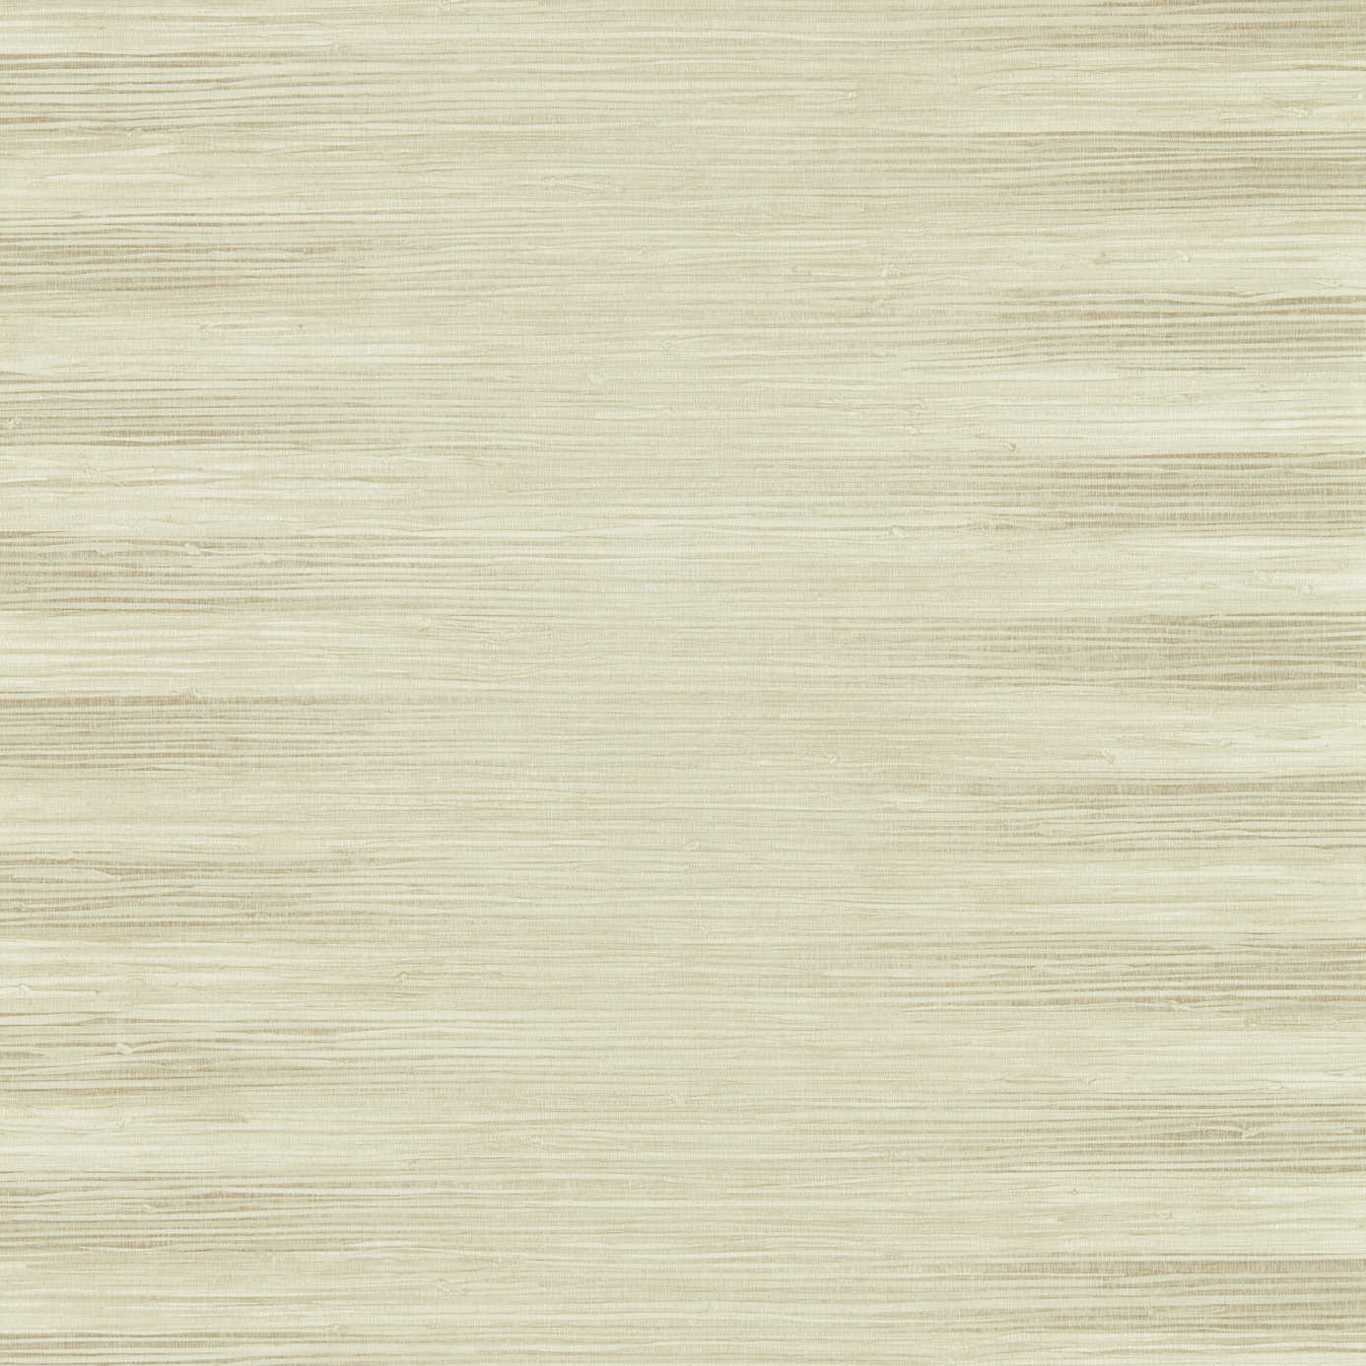 Kensington Grasscloth Paris Grey ZHIW313003